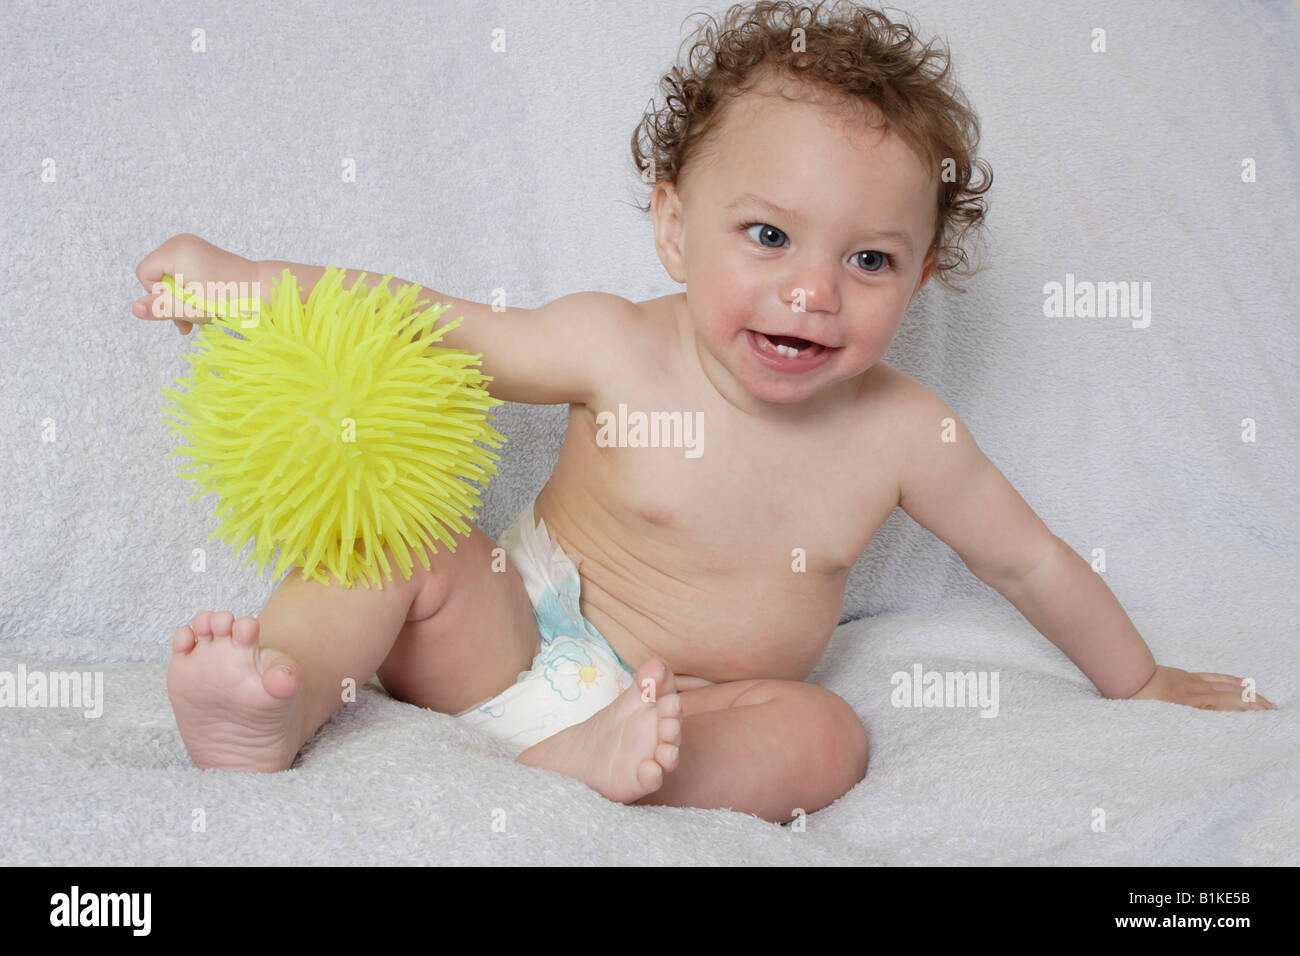 Porträt kleines Baby in Windeln mit gelben gummiartige Spielzeug spielen Stockfoto